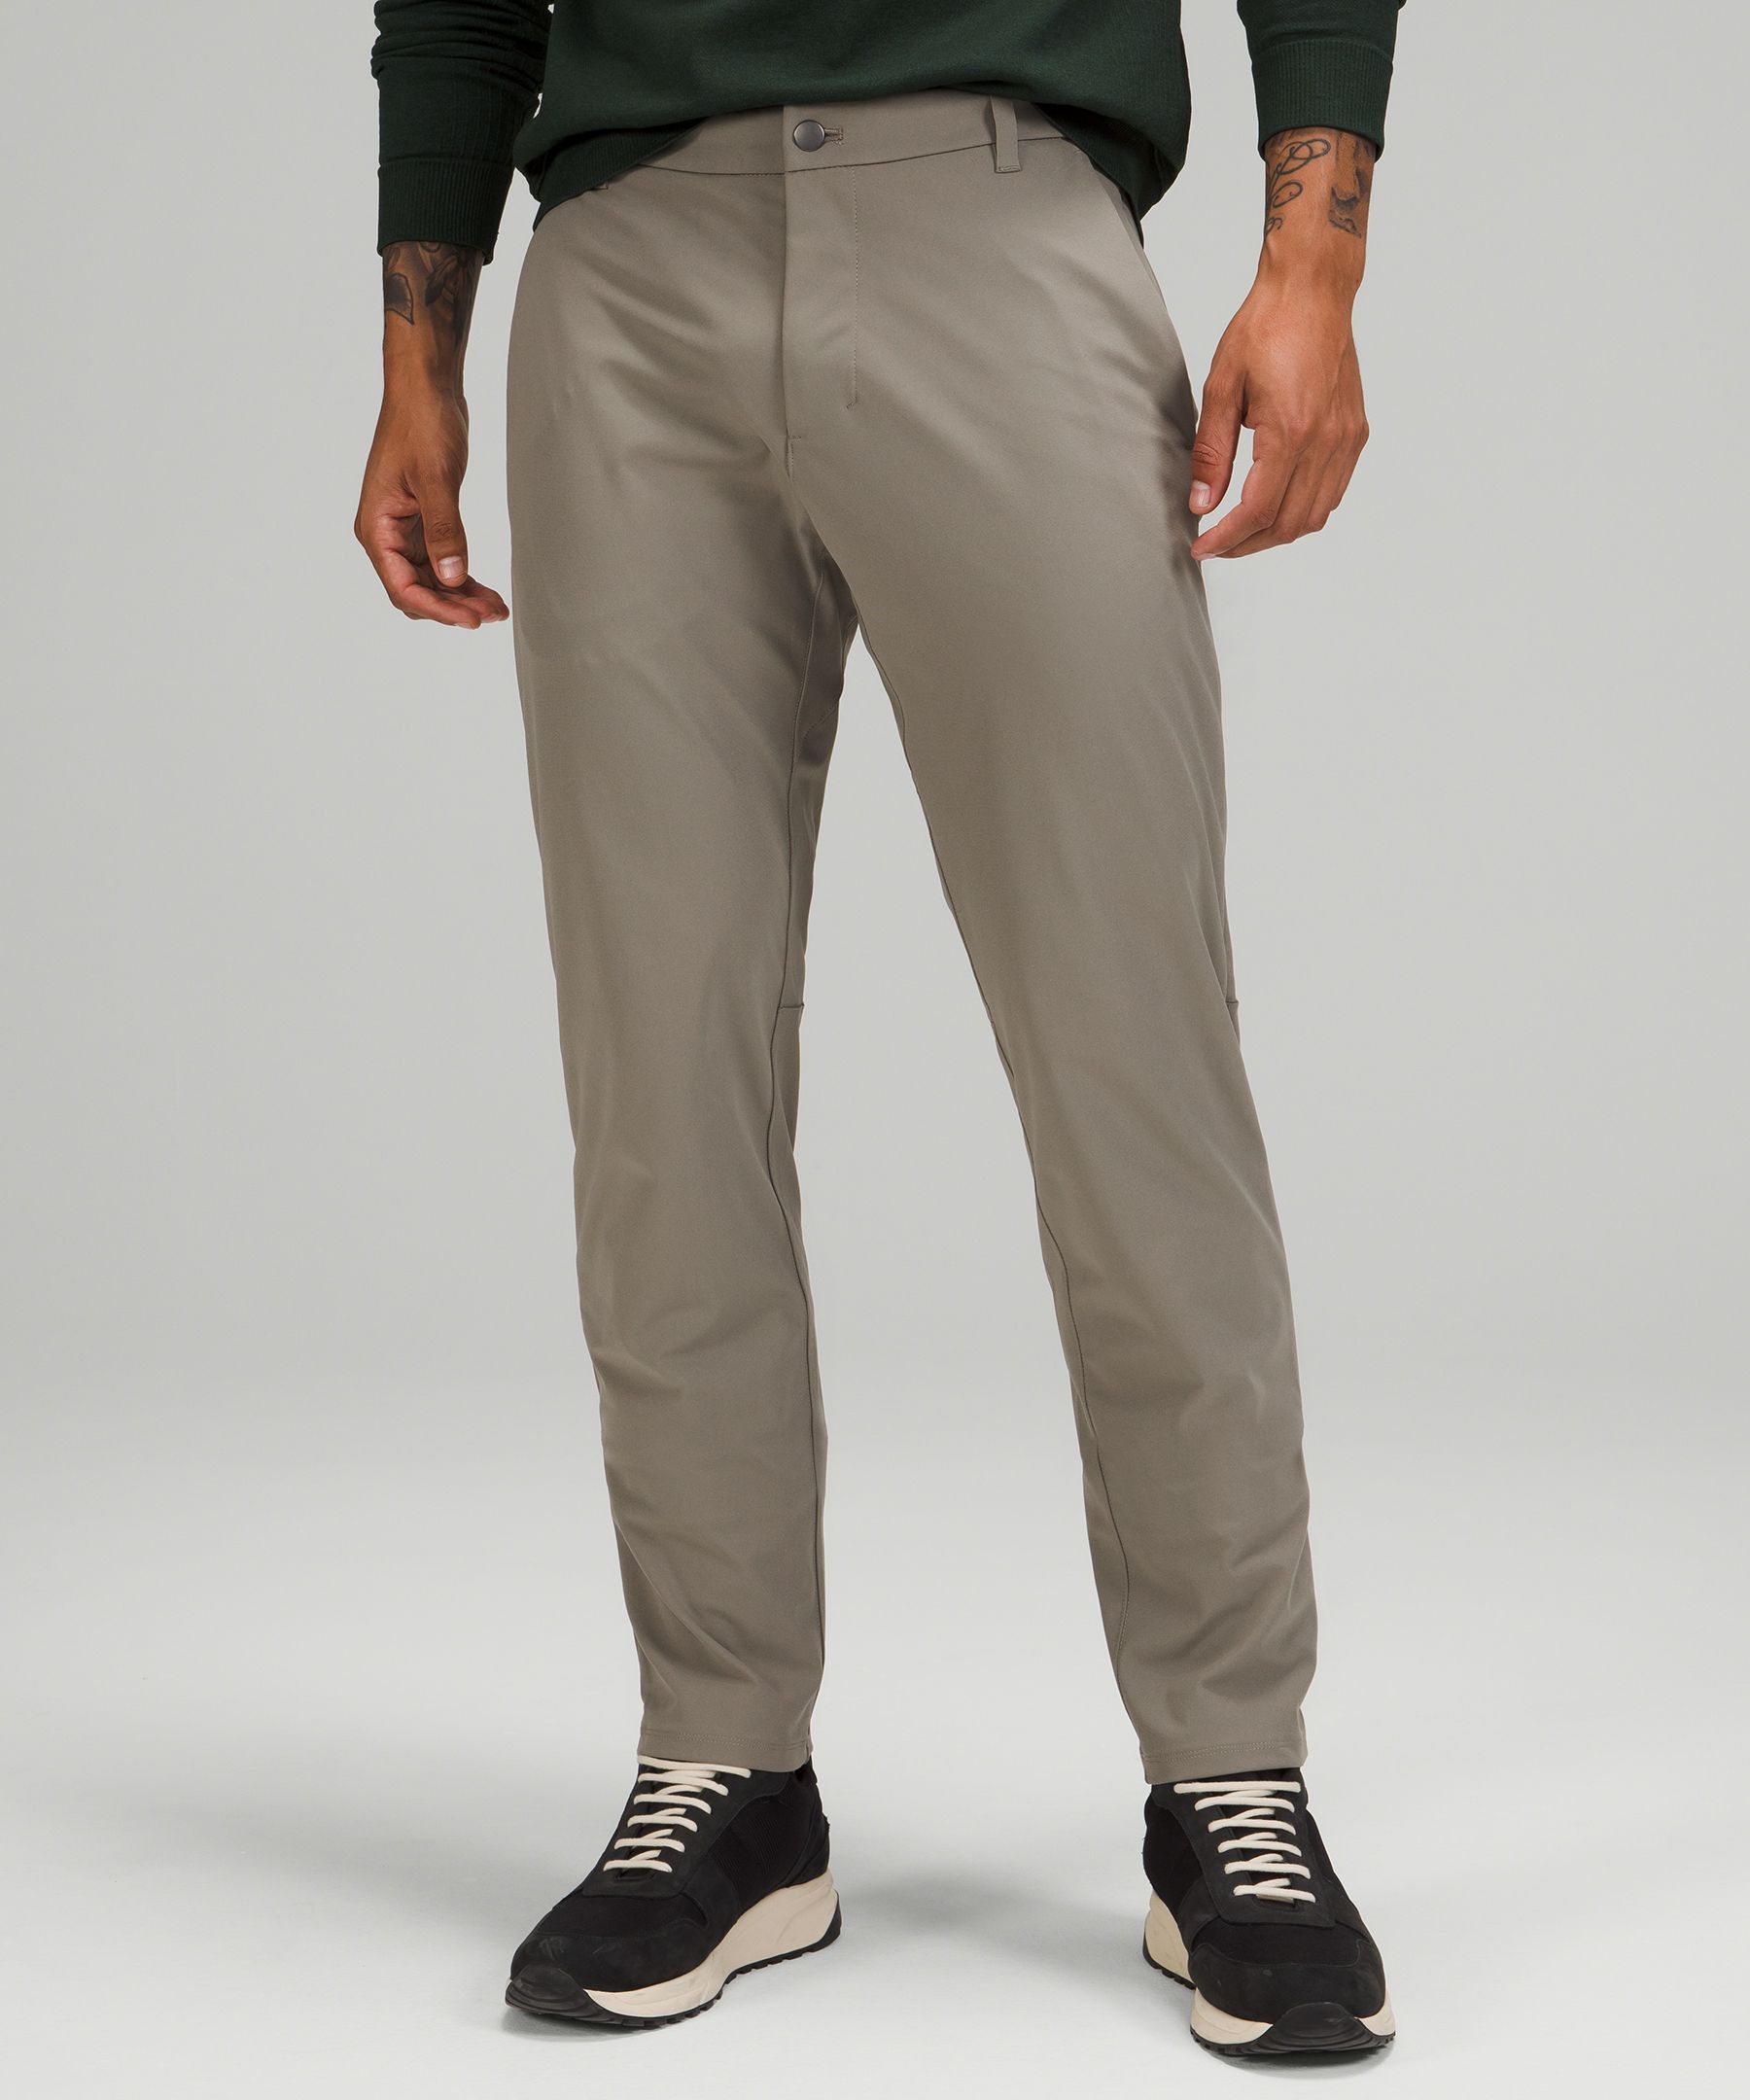 Men's Commission Trousers | lululemon